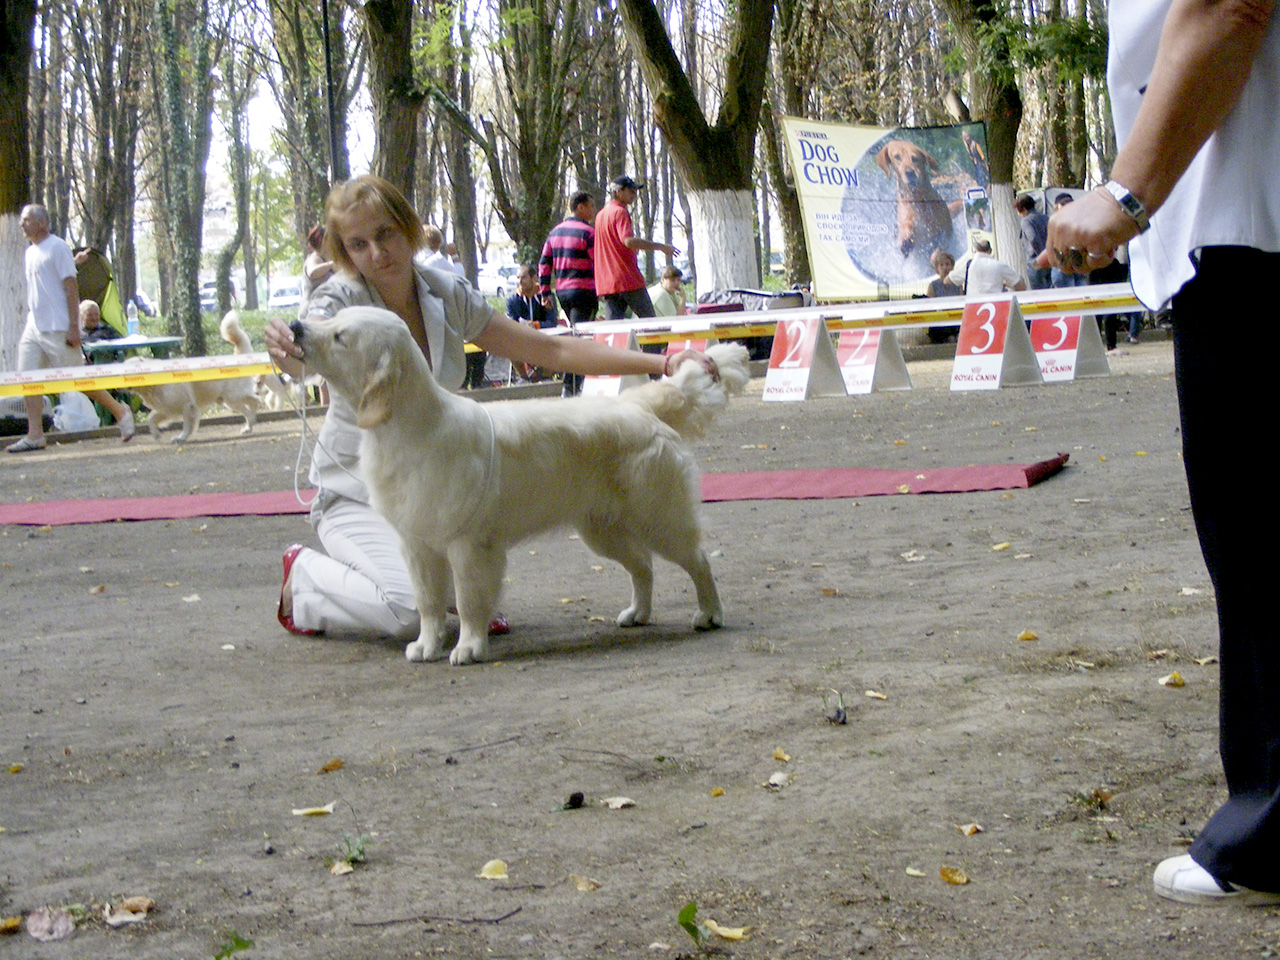 Ukraine, Uzhgorod, Special dog show of the hunting breeds "Zolotoj Fazan 2013", CAC                                                                                                                                                                            